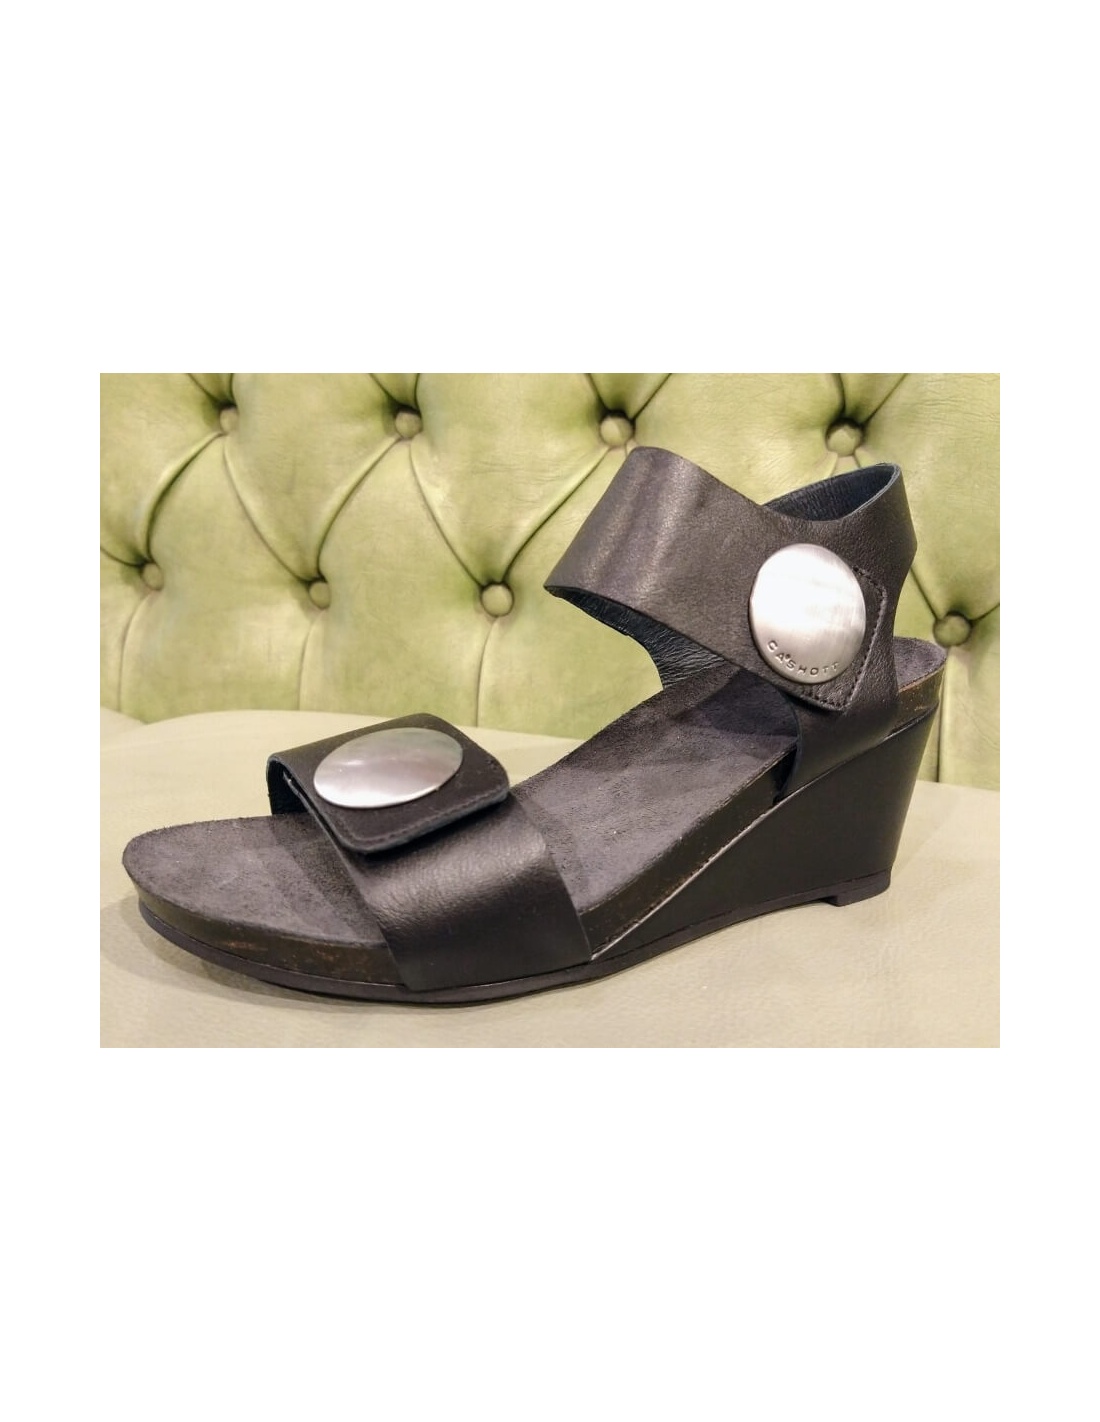 Summer Classy Wedge Sandals | Suede shoe style, Wedge heel sandals, Heels